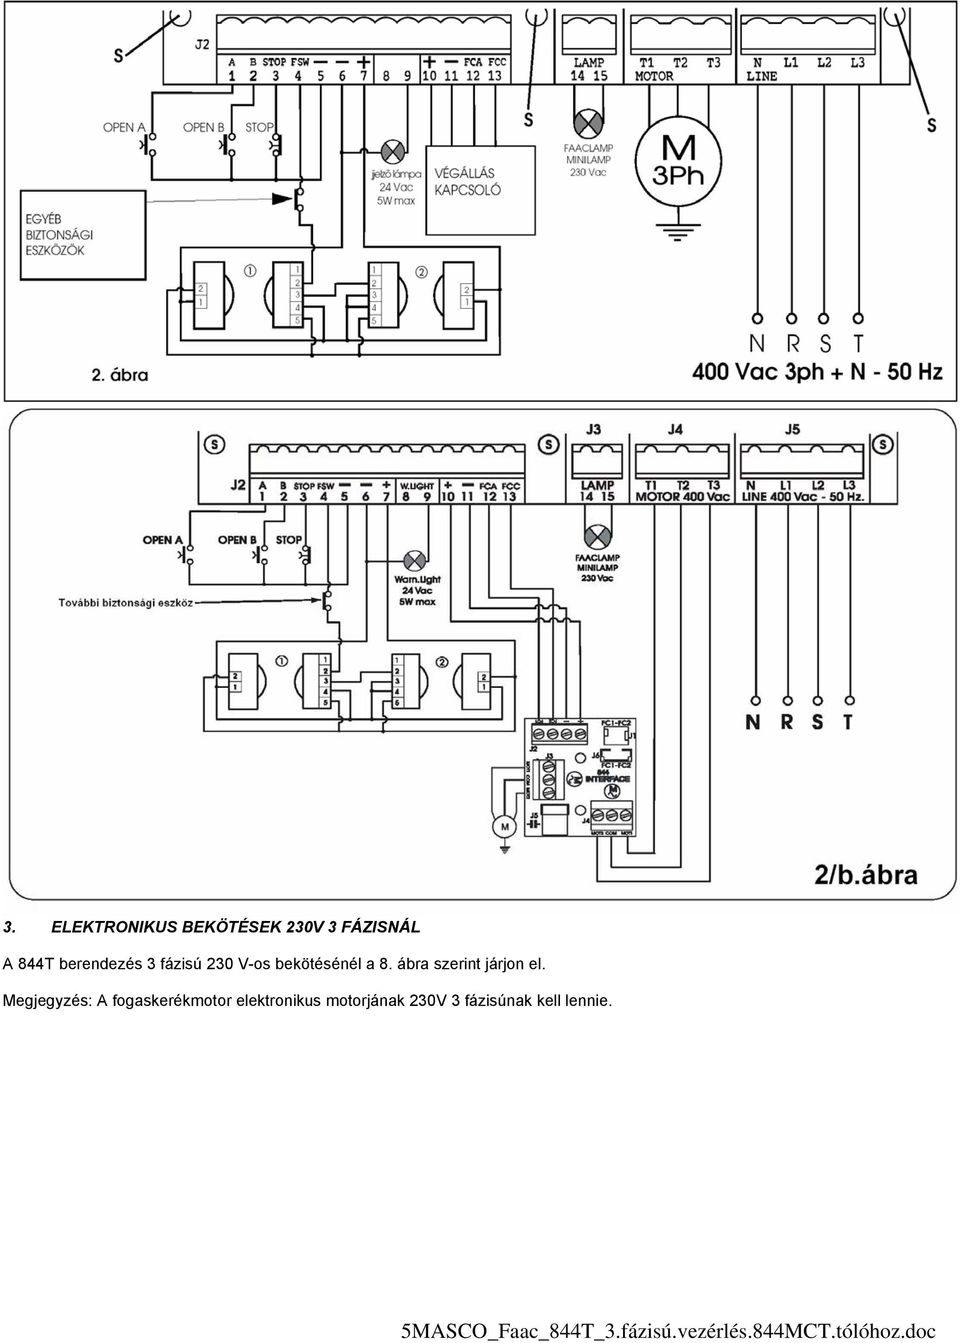 Megjegyzés: A fogaskerékmotor elektronikus motorjának 230V 3